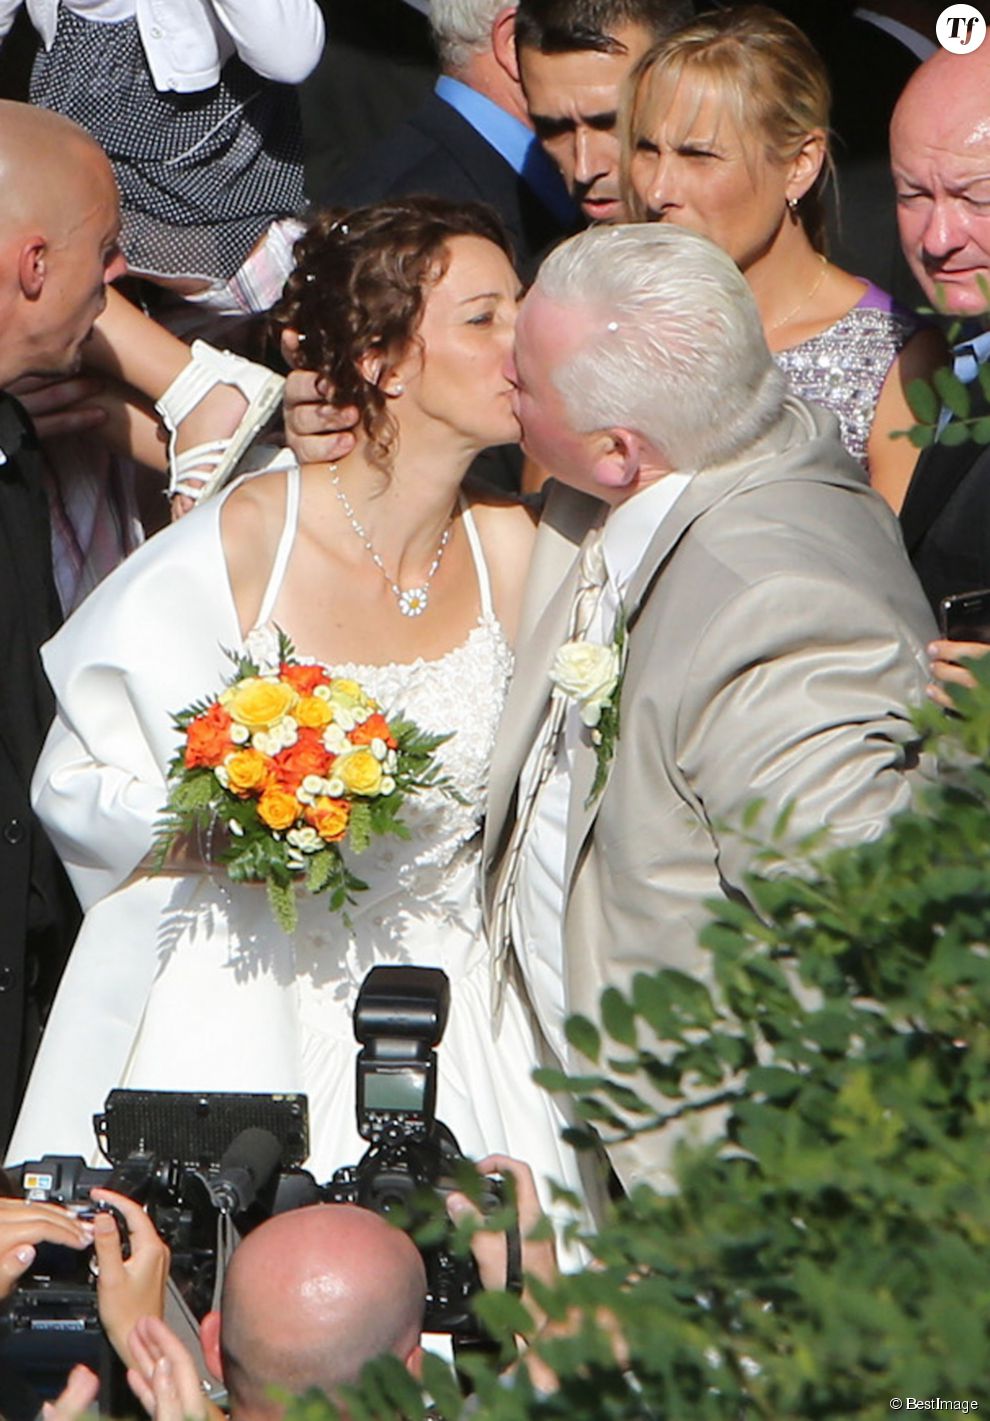  Mariage de Thierry Olive et Annie Derain le 14 septembre 2012 